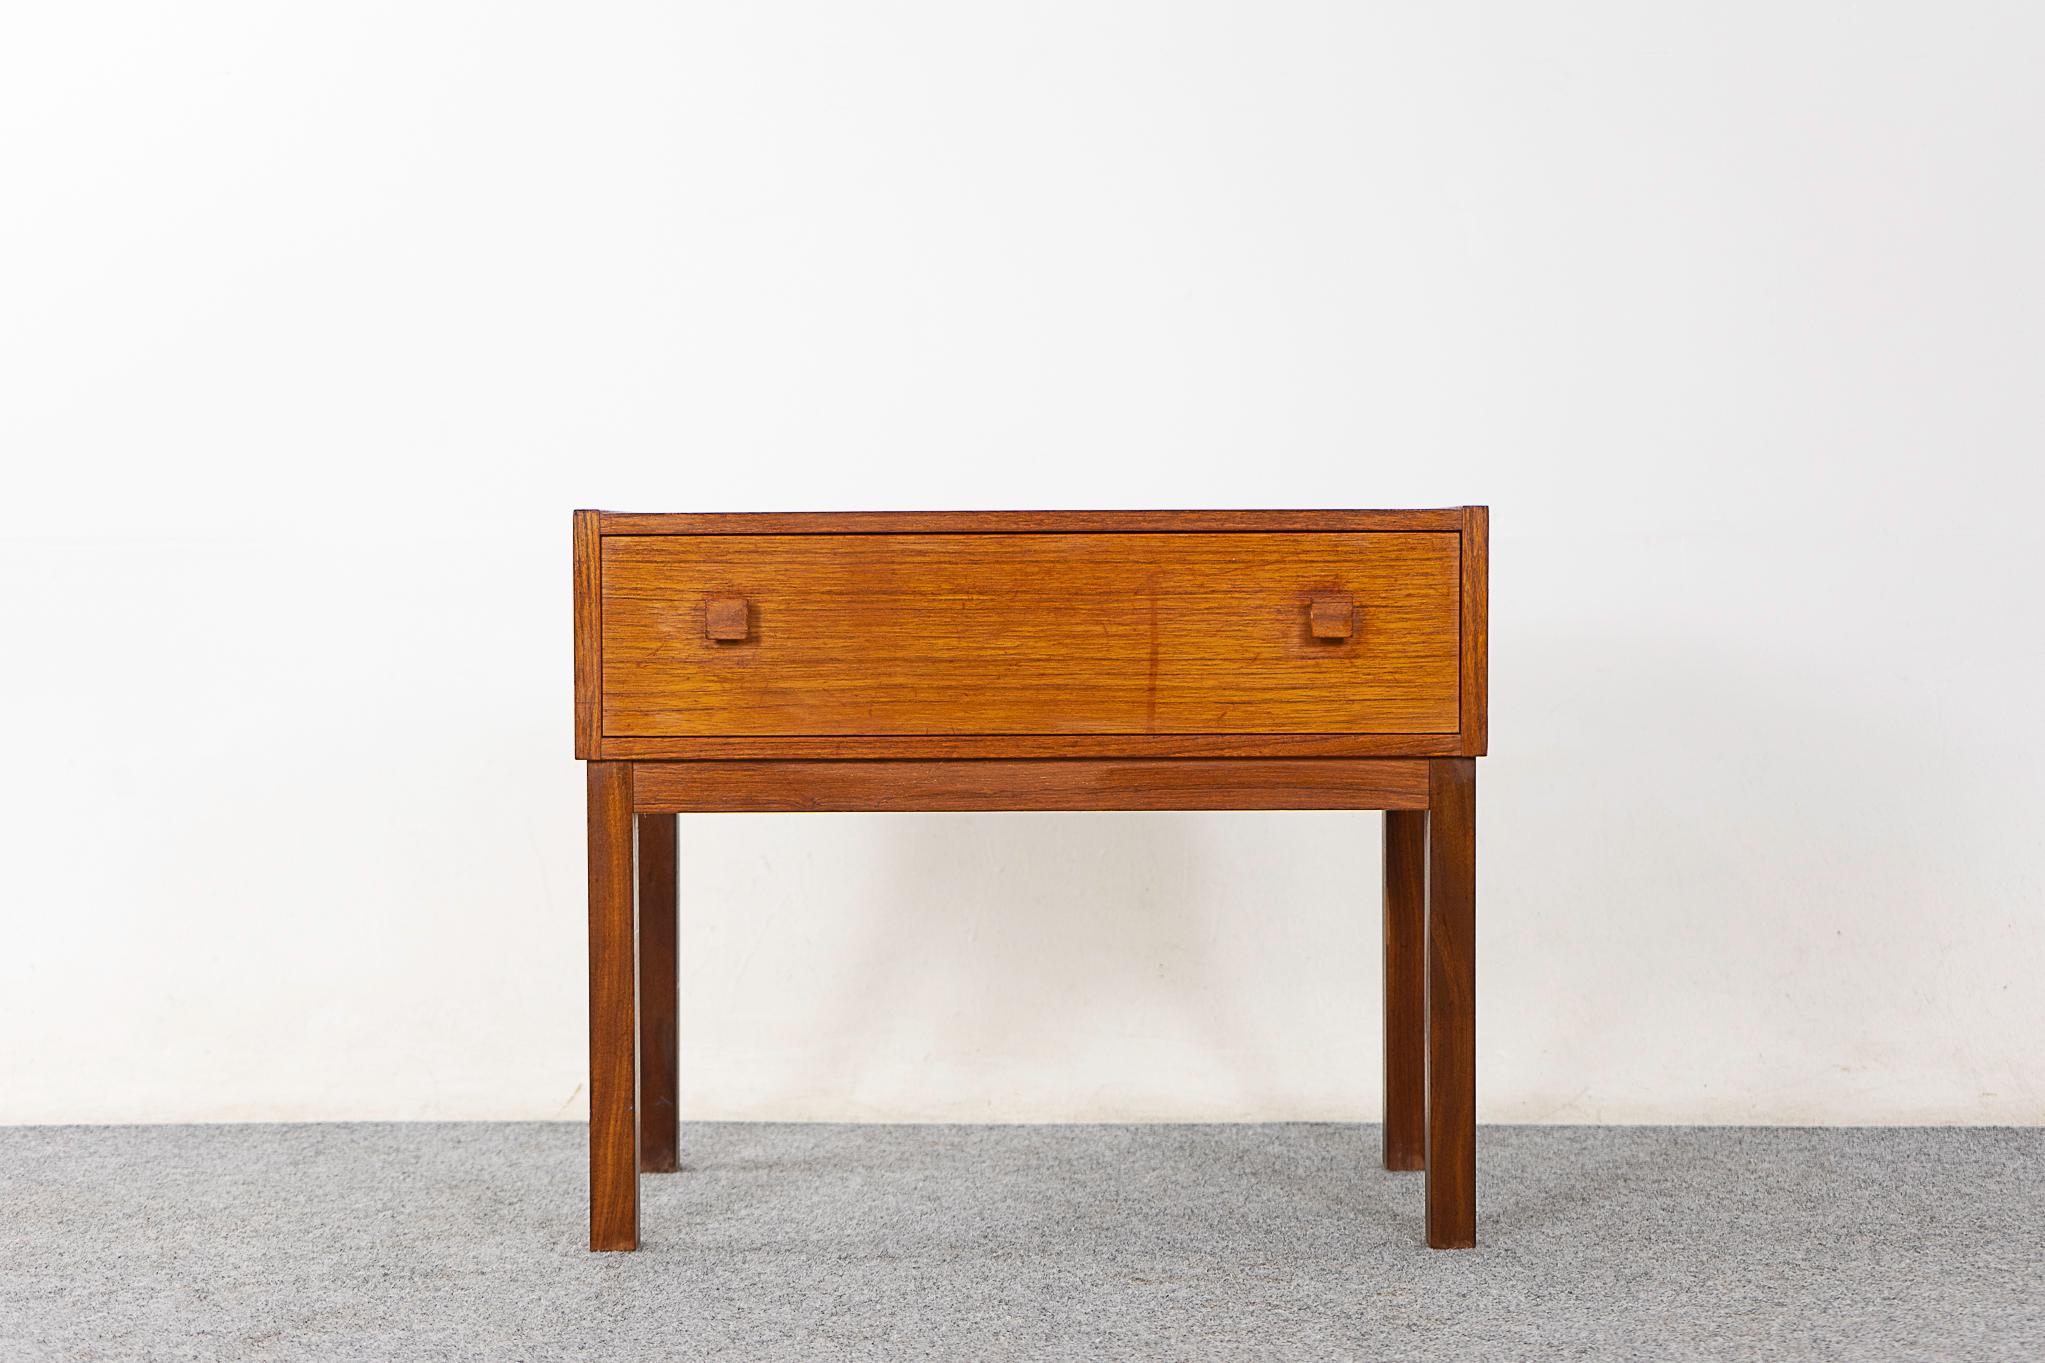 Teak Danish bedside table, circa 1960's. Beautifully veneered case rests on slender legs, handy sleek drawer.